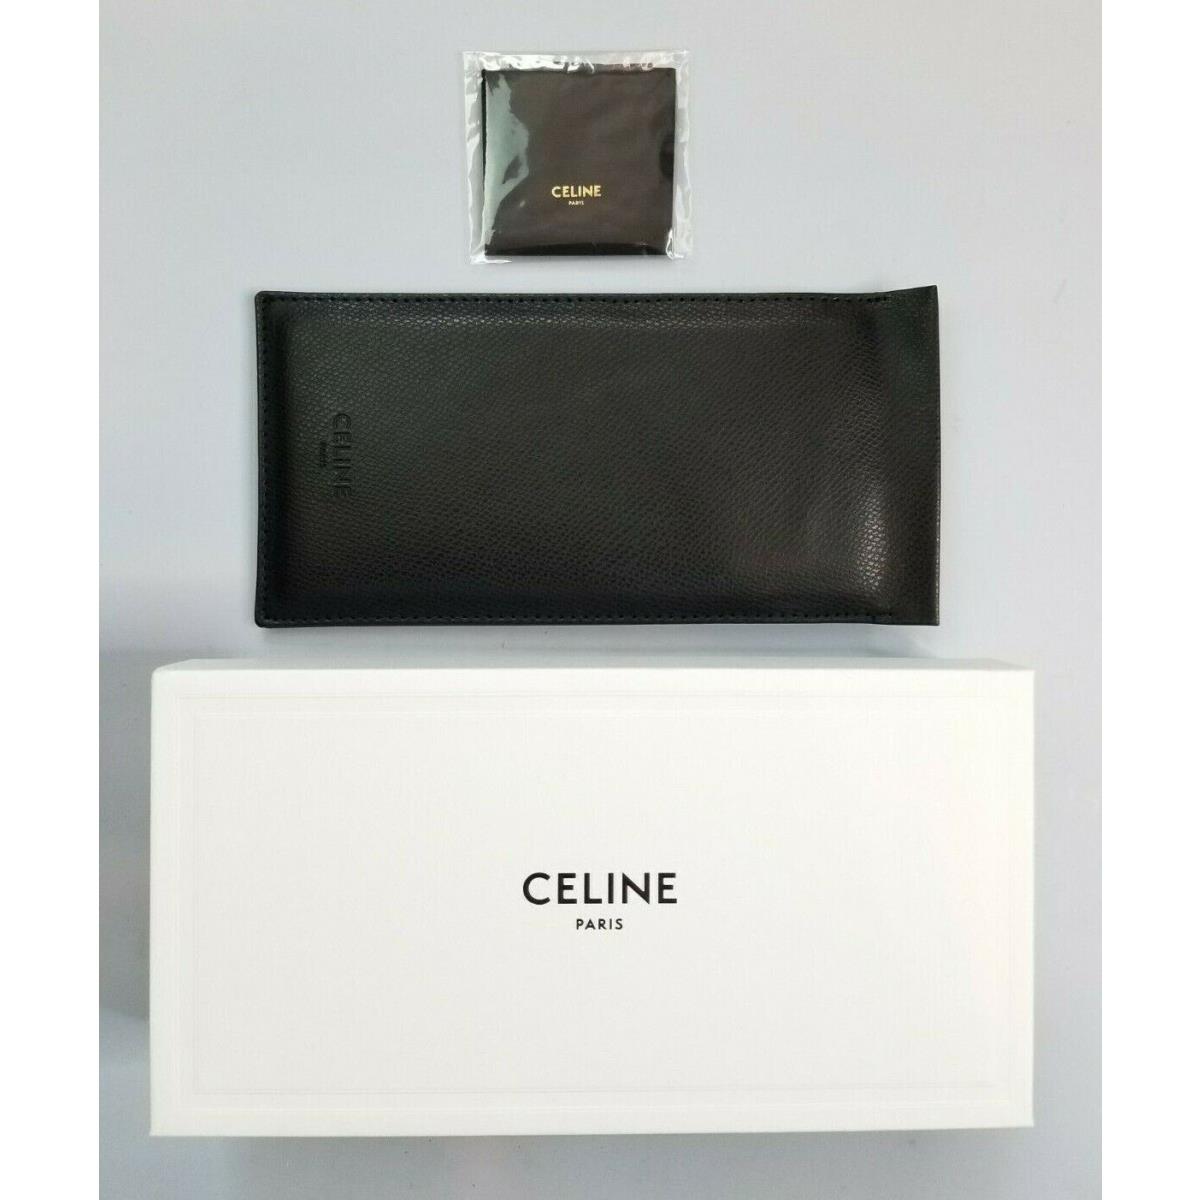 Celine sunglasses  - Brown/Silver Frame, Gray Lens 6